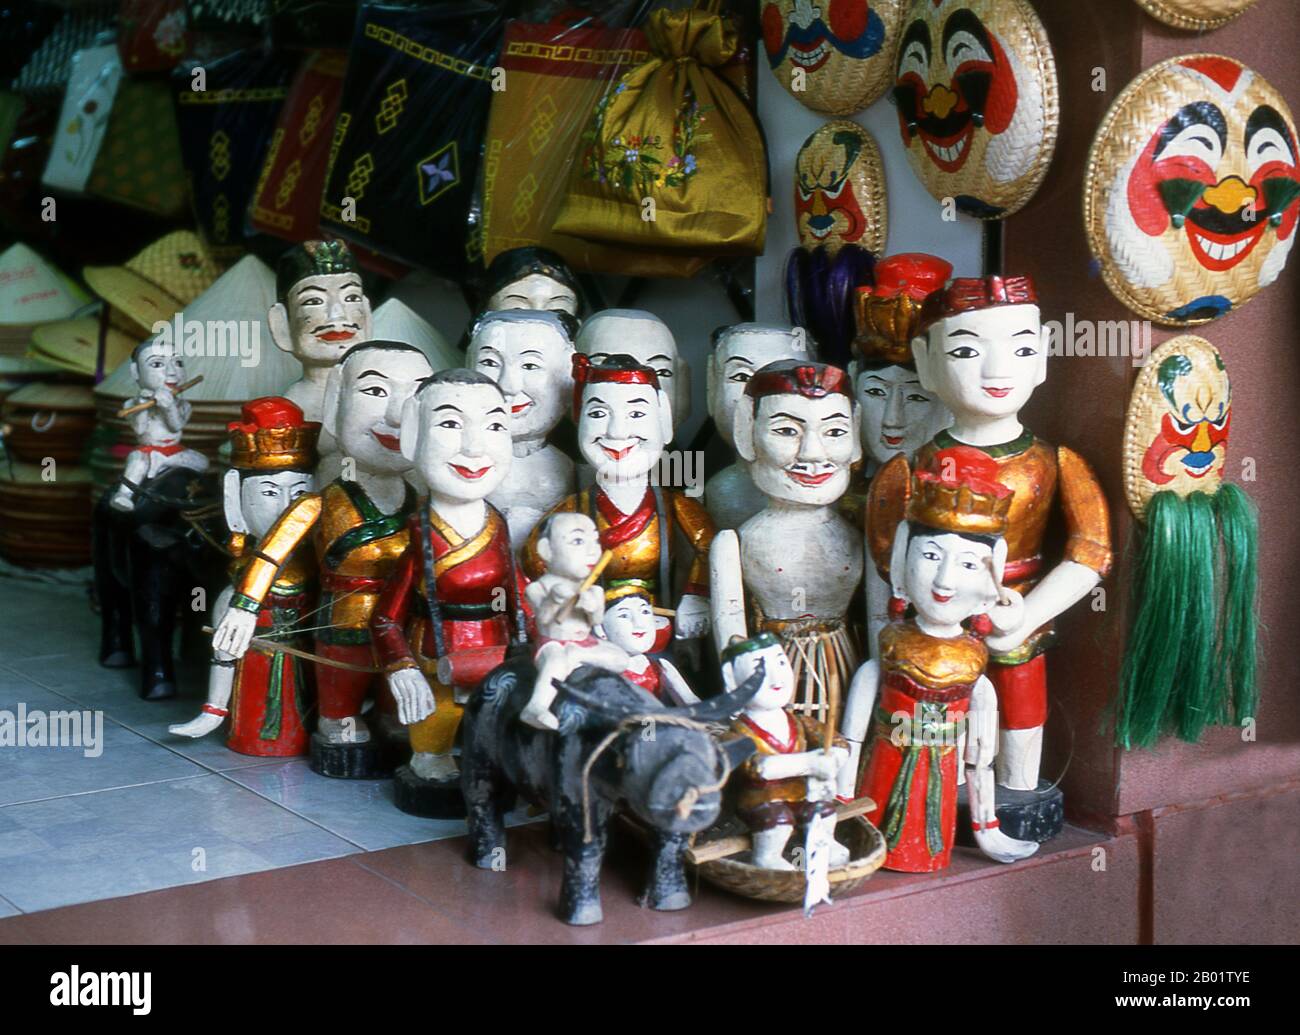 Vietnam : marionnettes d'eau à vendre près du lac Ho Hoan Kiem, Hanoi. Marionnettes d'eau ou Múa rối nước, littéralement «marionnettes qui dansent sur l'eau» est originaire du delta du fleuve Rouge. Les marionnettes sont sculptées dans du bois résistant à l'eau pour représenter les modes de vie ruraux traditionnels et les créatures mythiques. Debout derrière la scène aquatique, au fond de la taille dans l'eau, les marionnettistes cachés manœuvrent habilement leurs charges en bois sur la musique d'un orchestre traditionnel. Banque D'Images